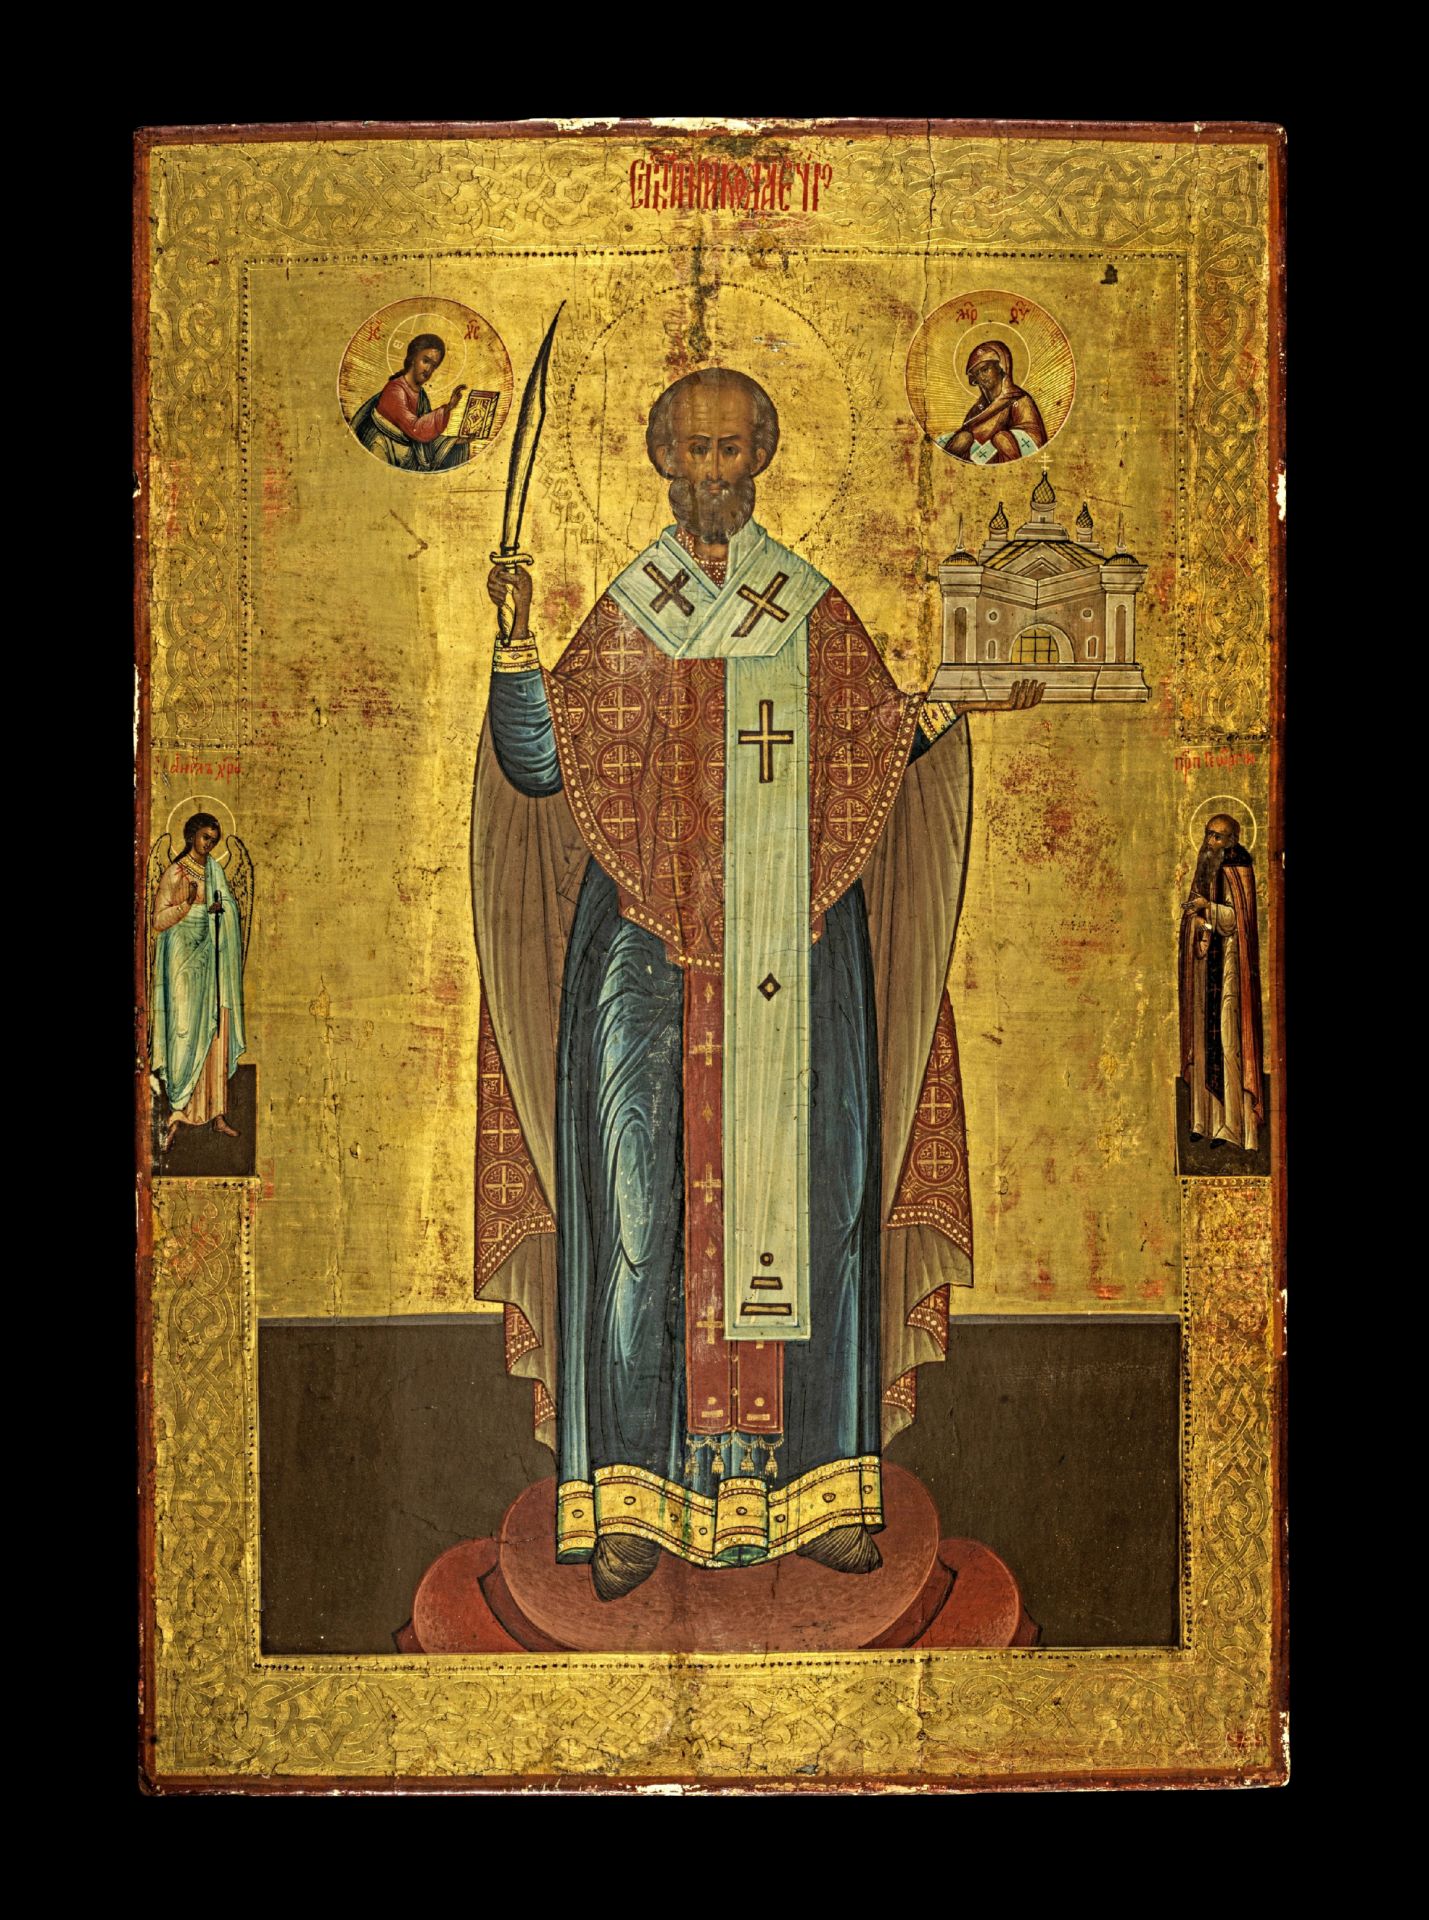 Large icon showing St. Nicholas of Mozhayzk.